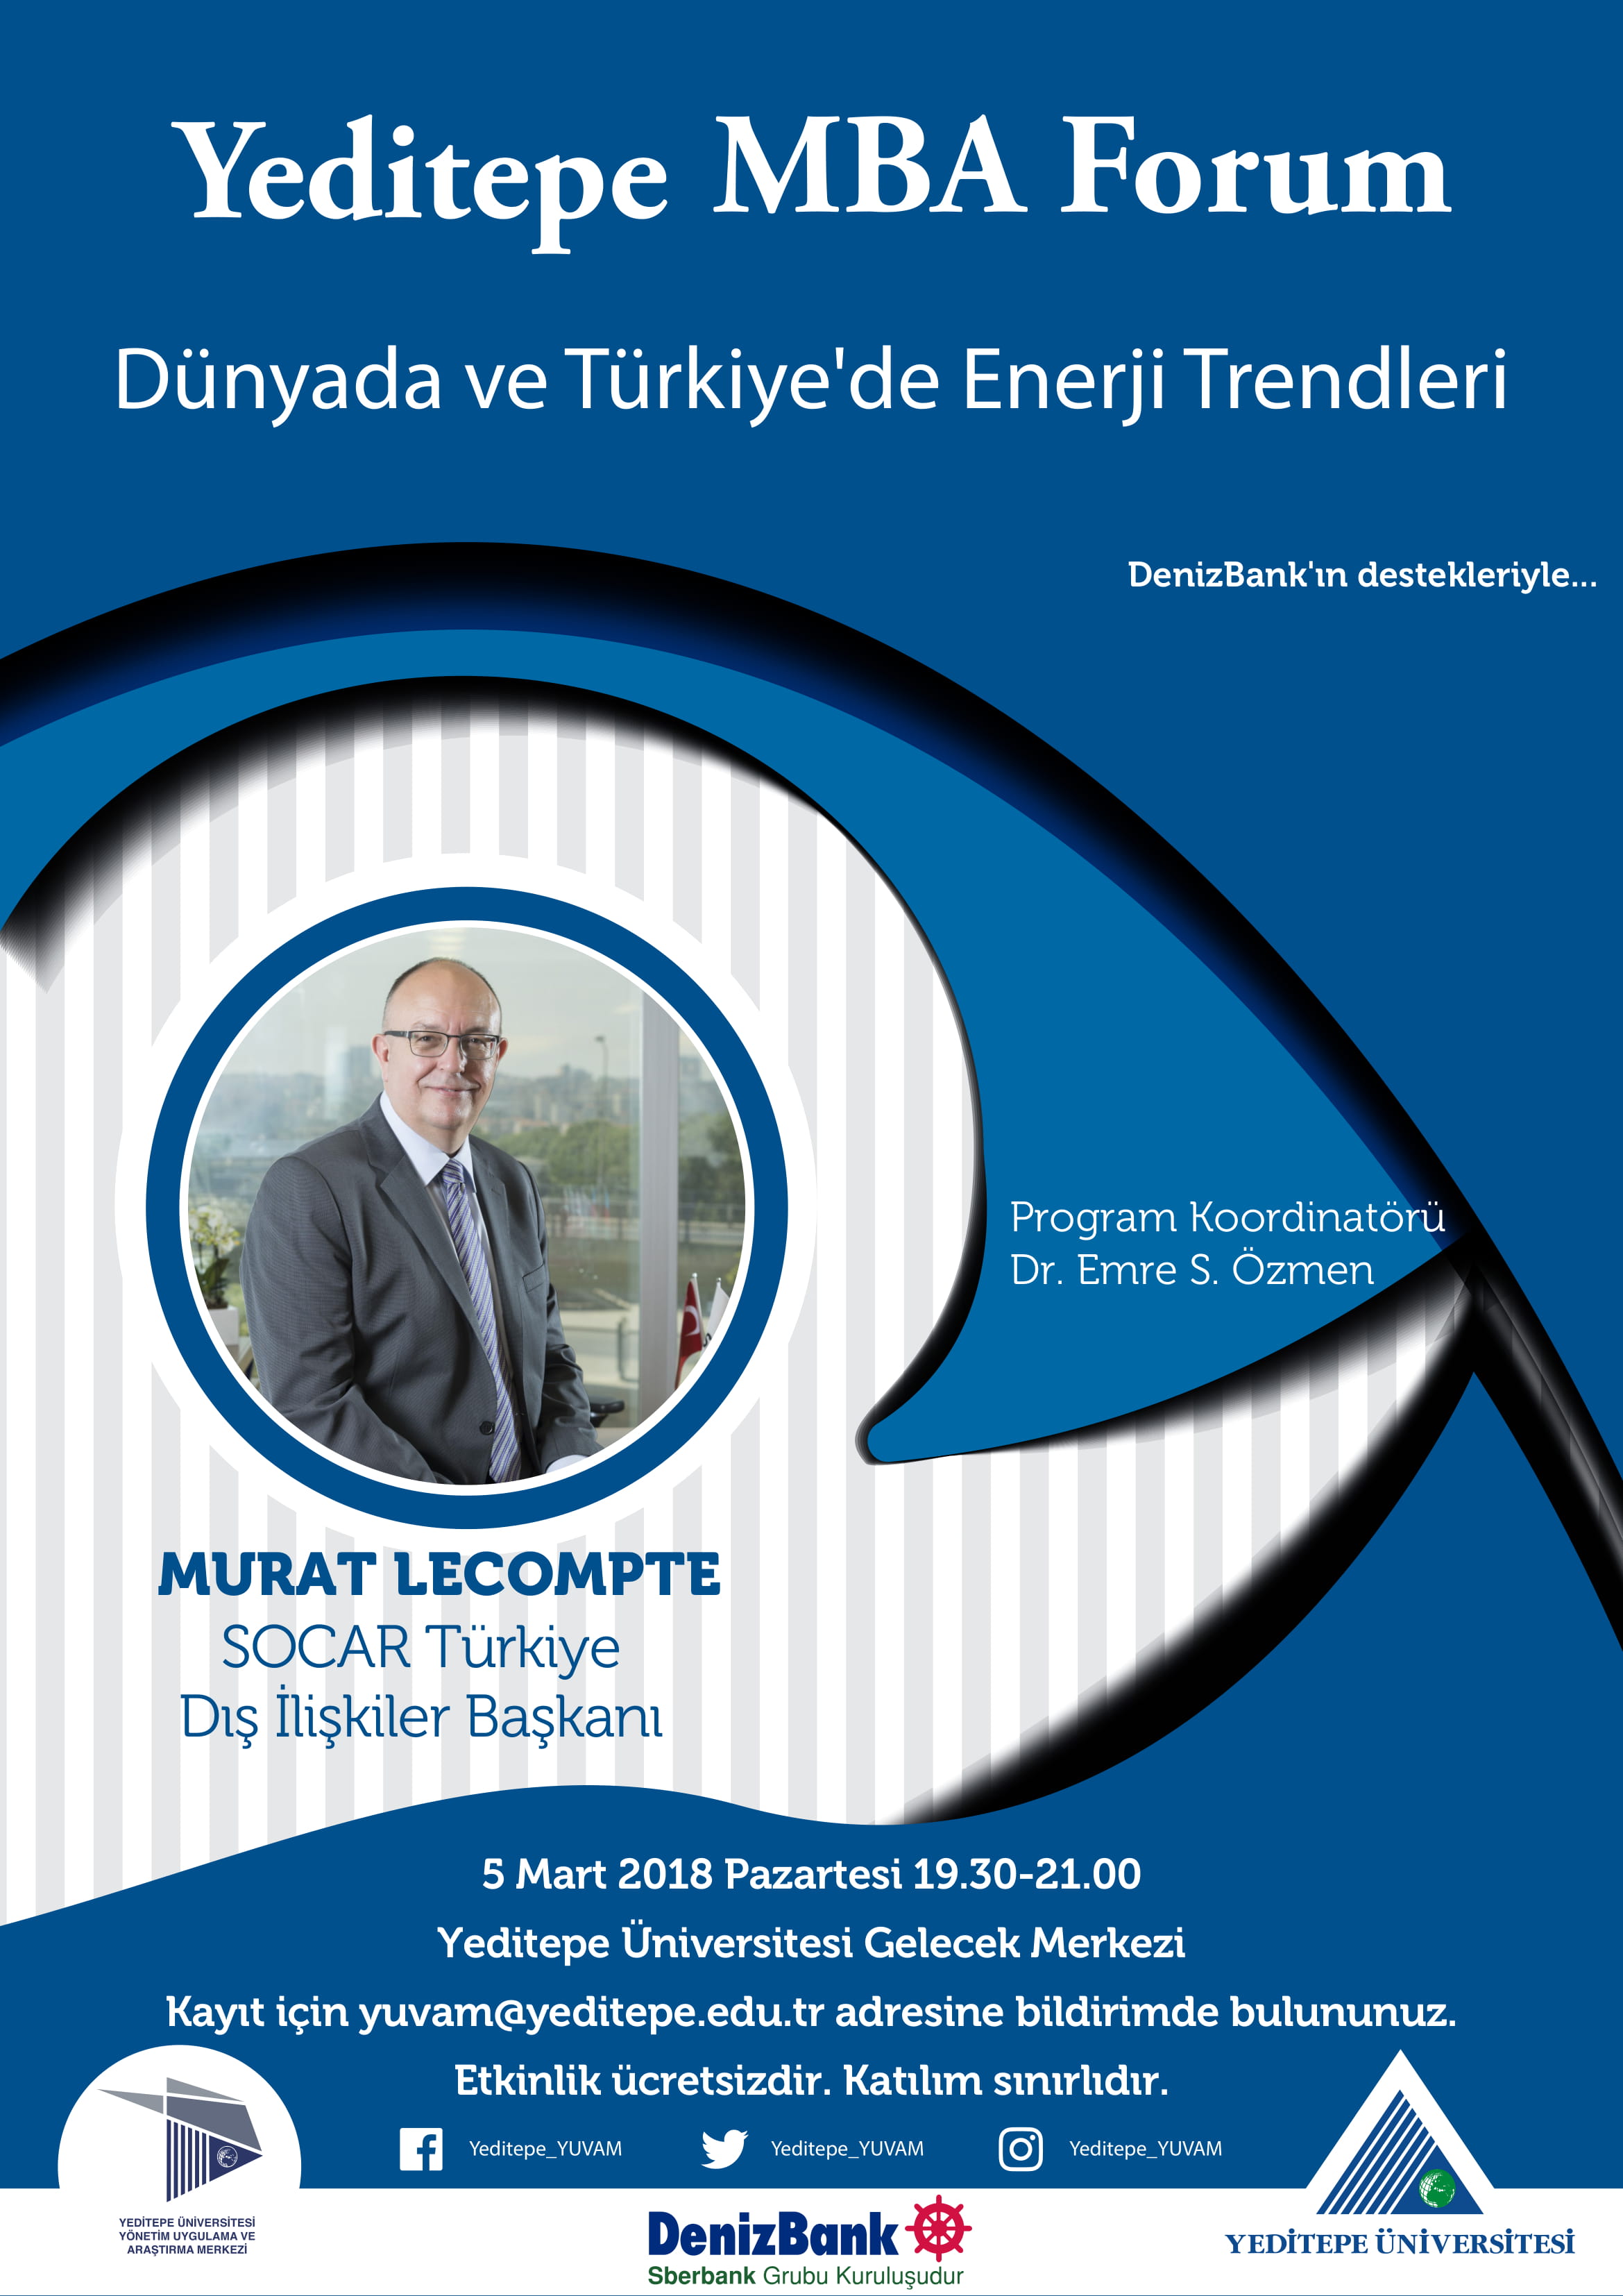 Yeditepe MBA Forum / Dünyada ve Türkiye'De Enerji Trendleri